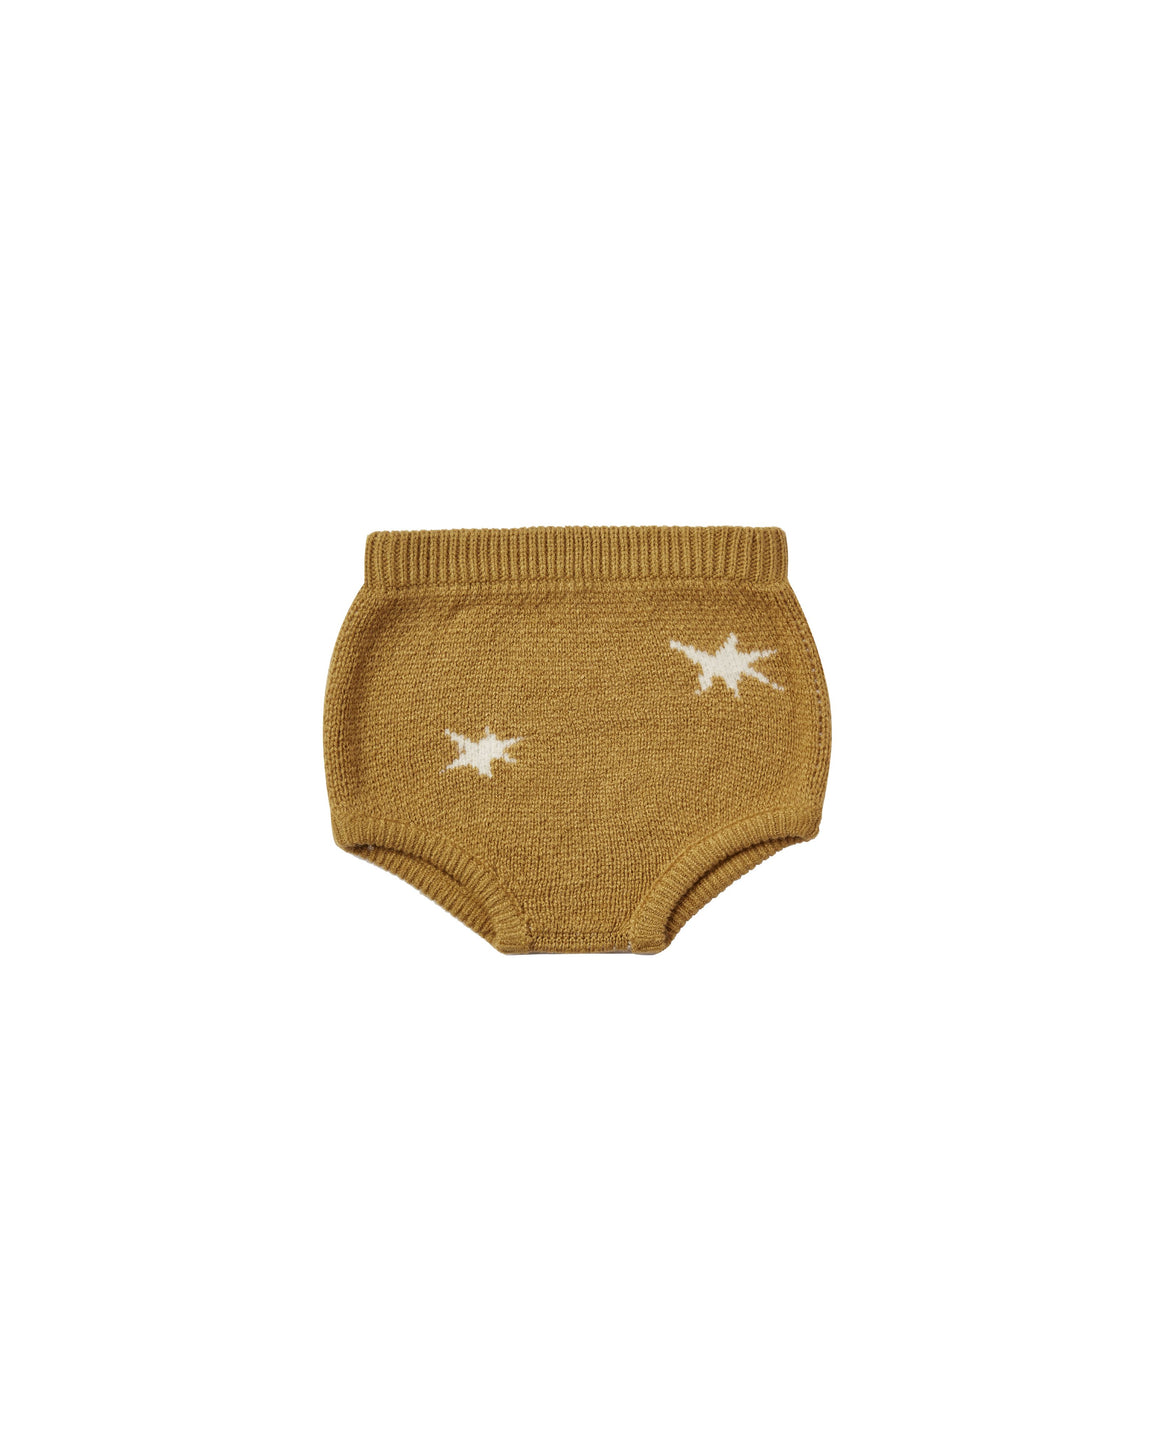 Stars Knit Bloomer - Goldenrod